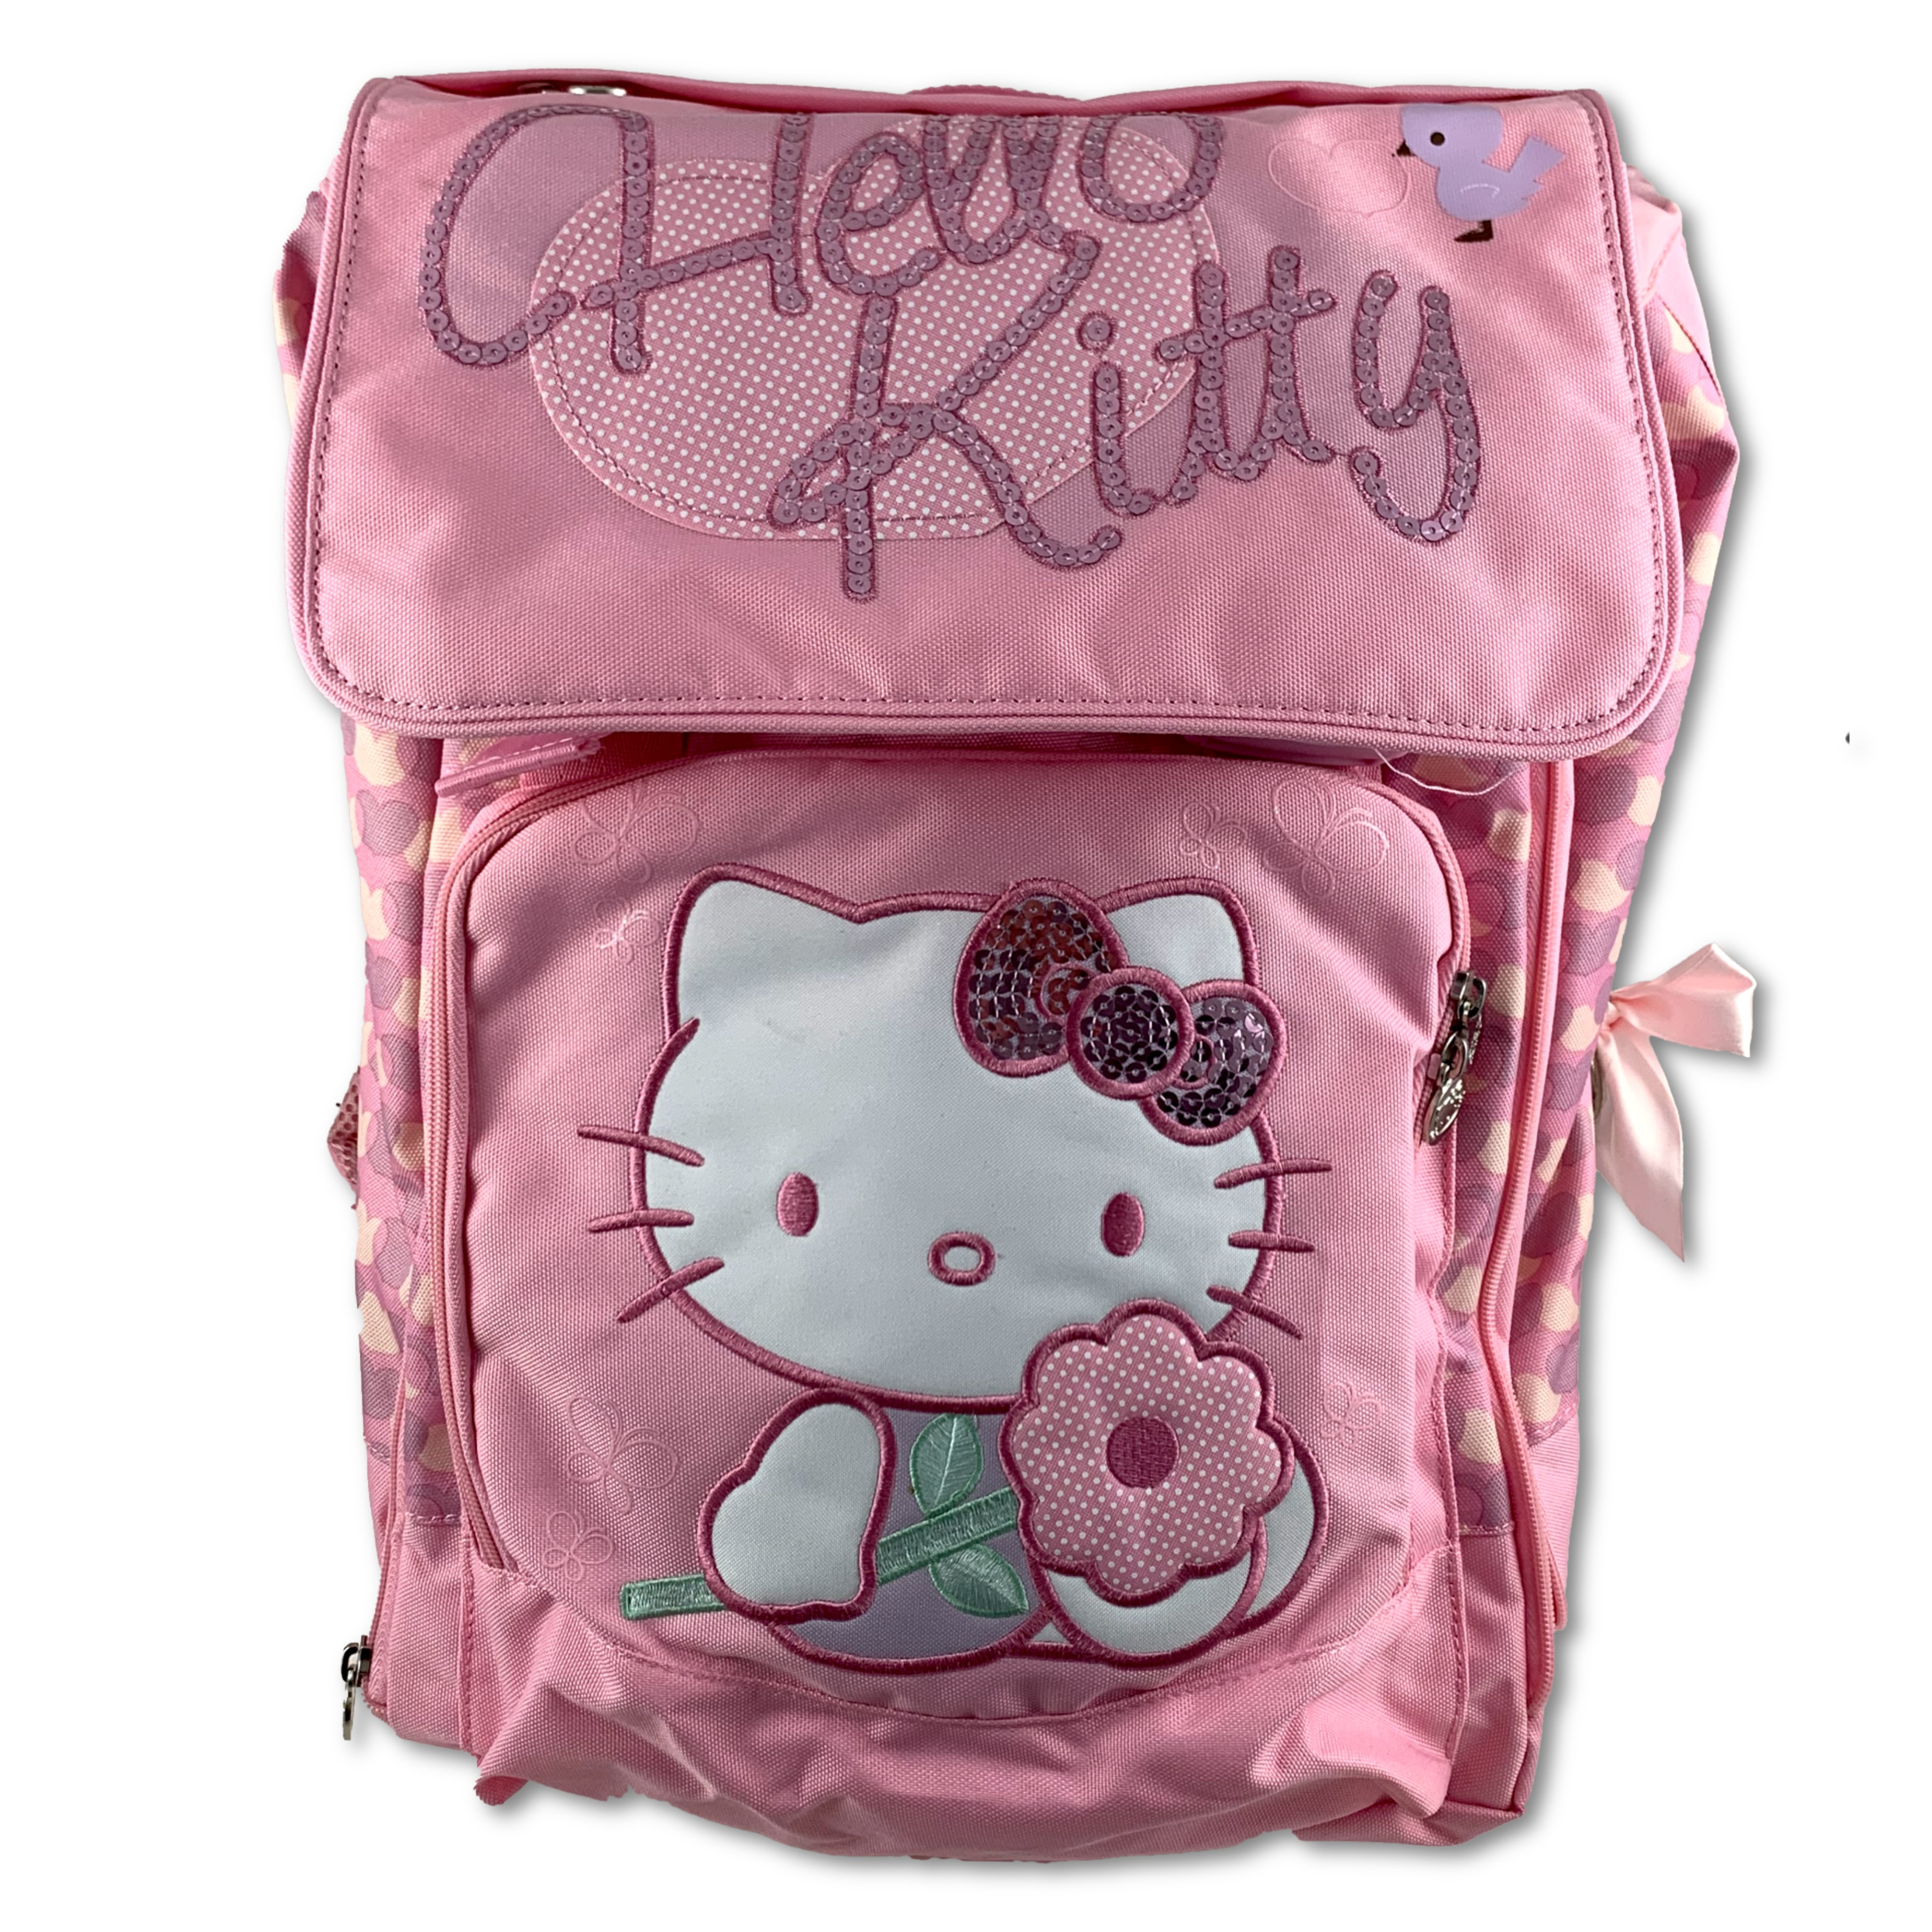 Toller Hello Kitty Rucksack für Schule und Freizeit!